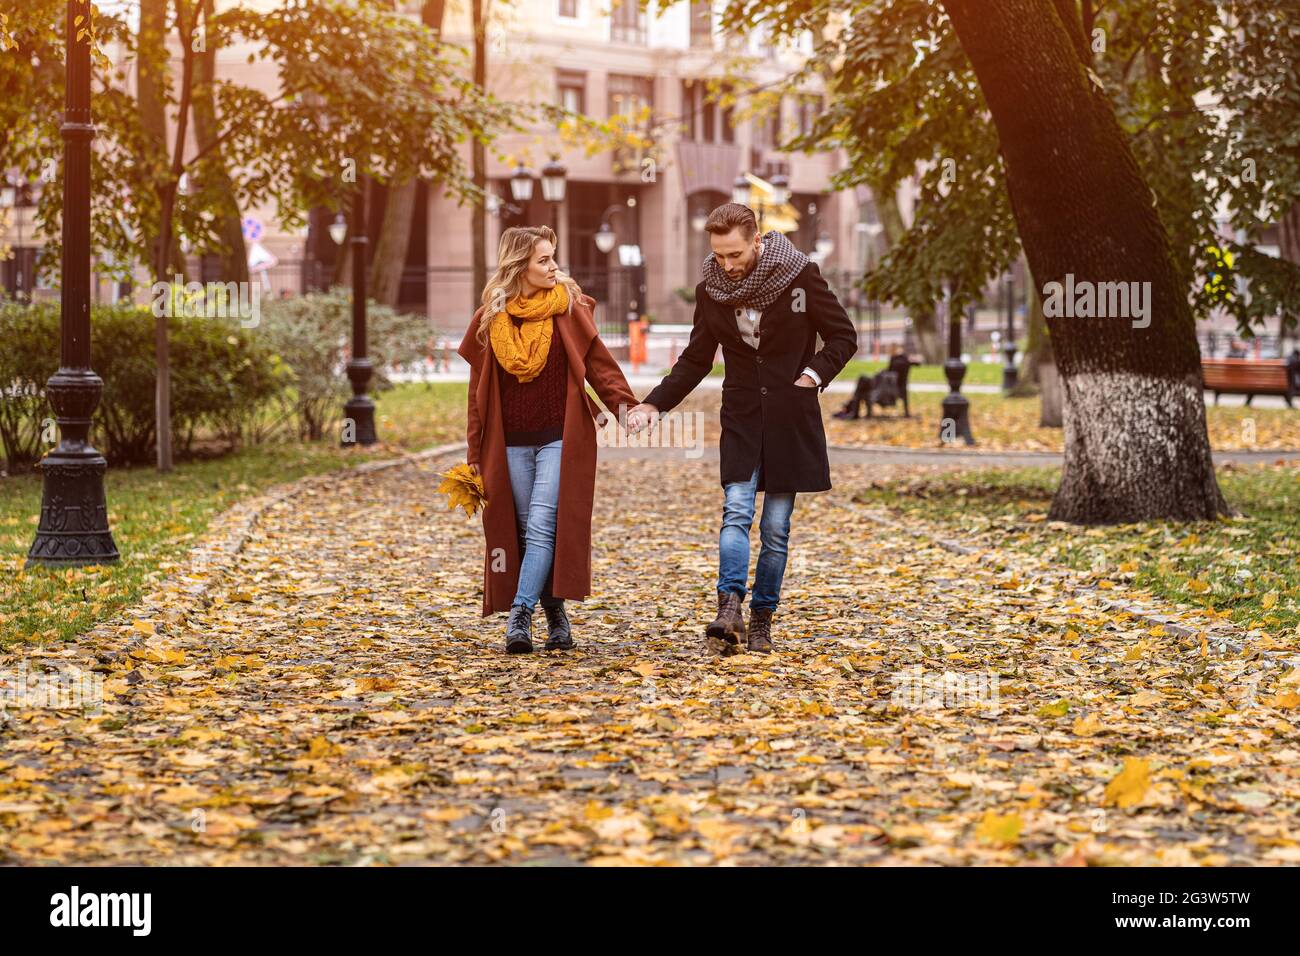 Paar, das im Park läuft und Hände hält. Außenaufnahme eines verliebten jungen Paares, das auf einem Pfad durch einen Herbstpark läuft. Aut Stockfoto